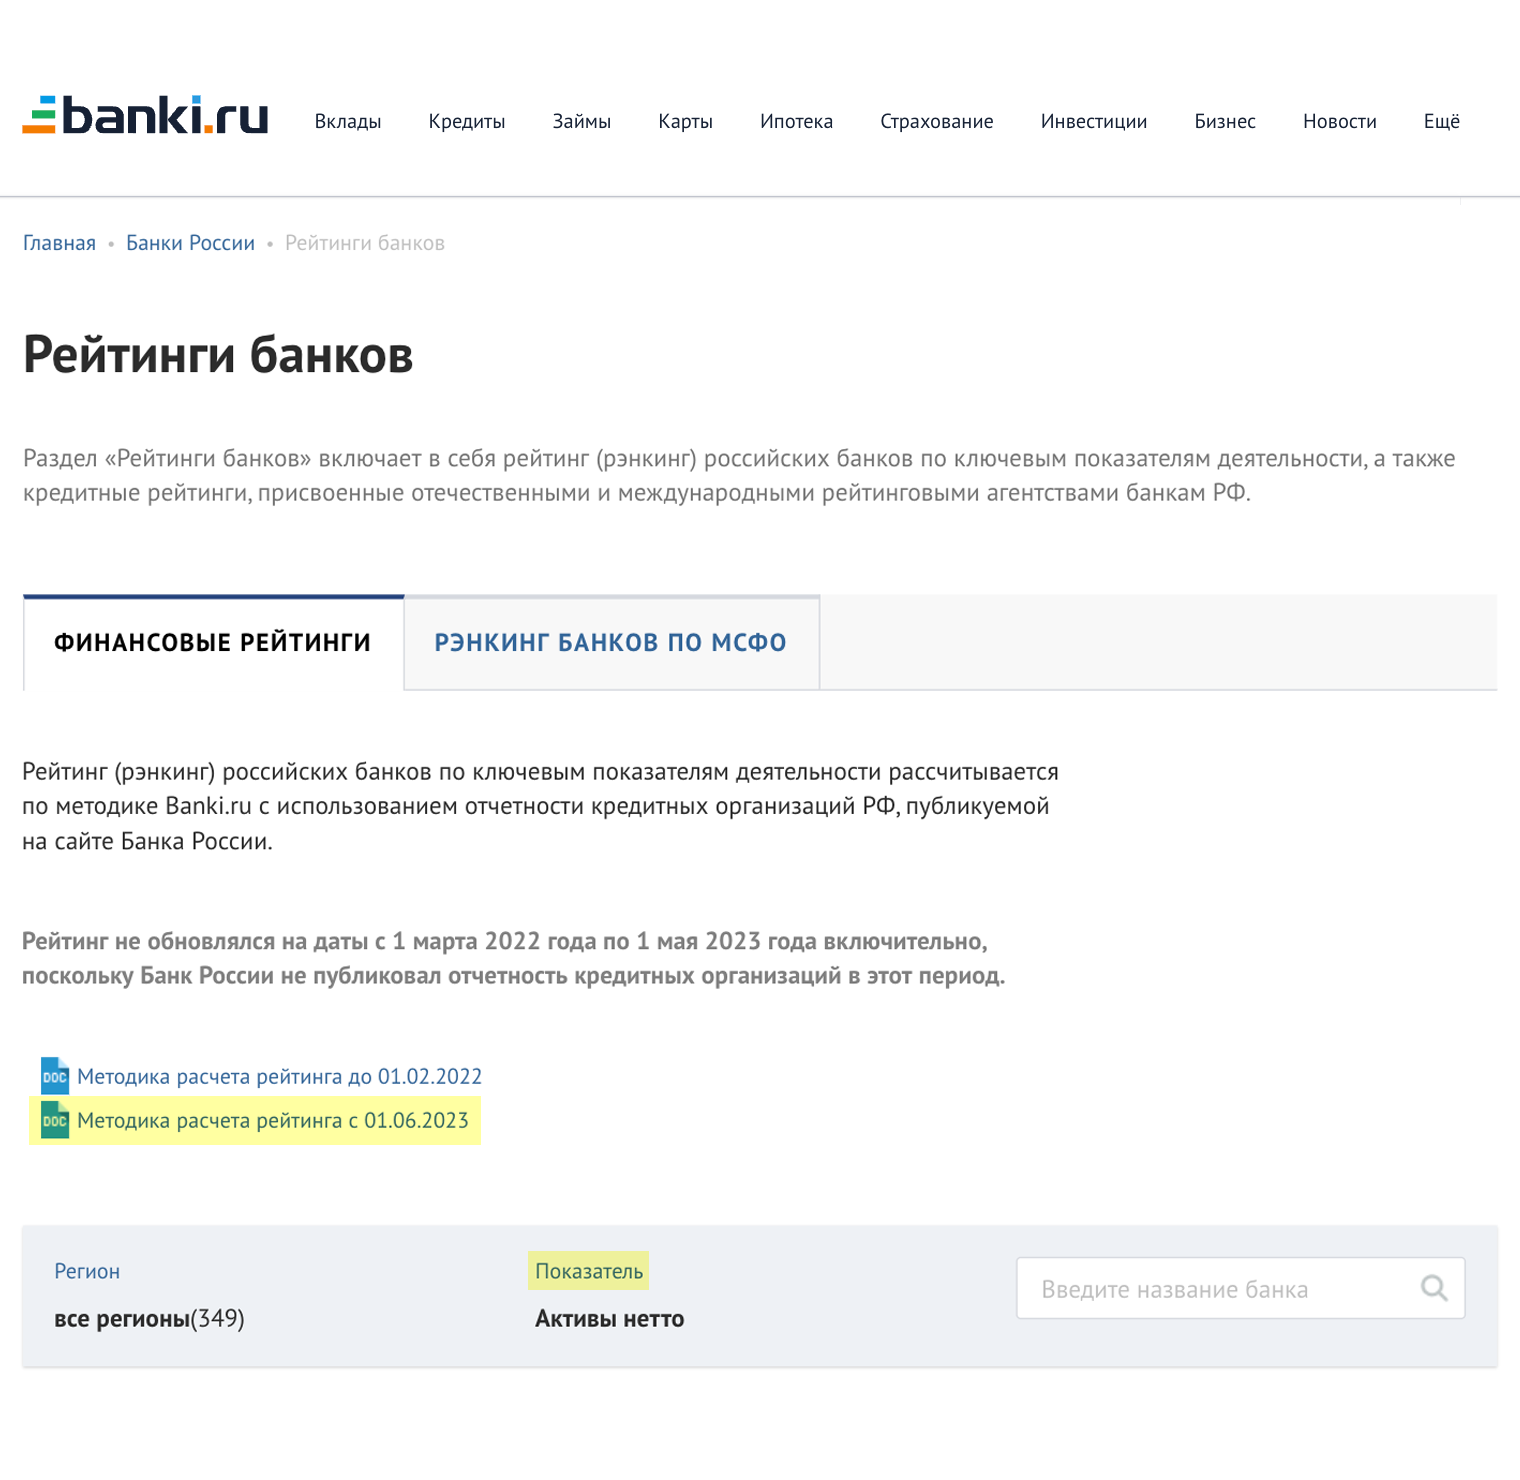 На портале «Банки-ру» всегда можно посмотреть методики расчета и рейтинги банков по разным показателям